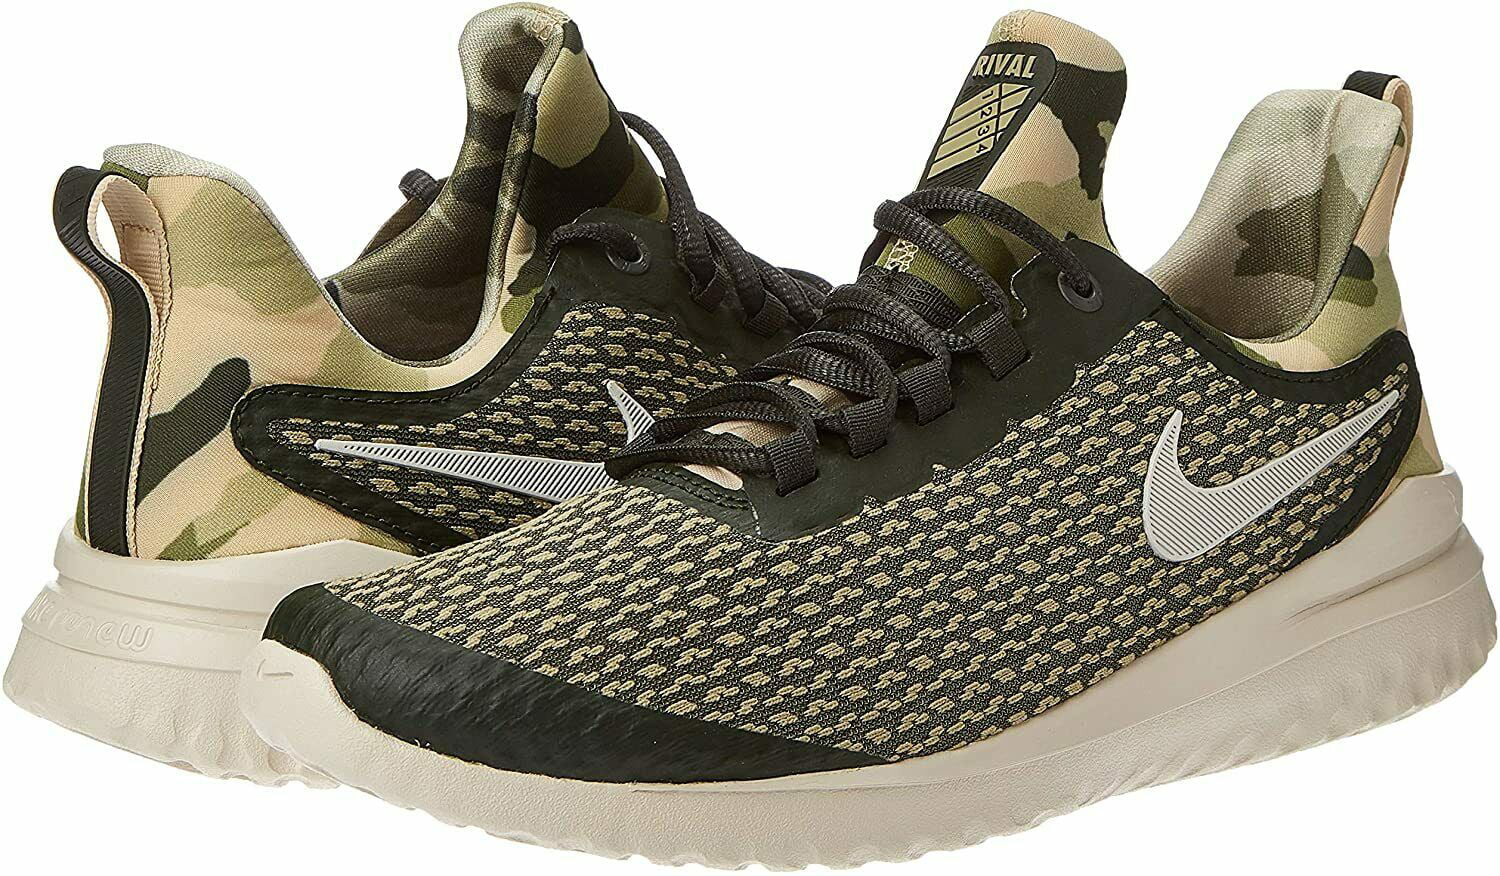 Nike Renew Rival Camo Sequoia Training Running Shoes Size 12 - Walmart.com